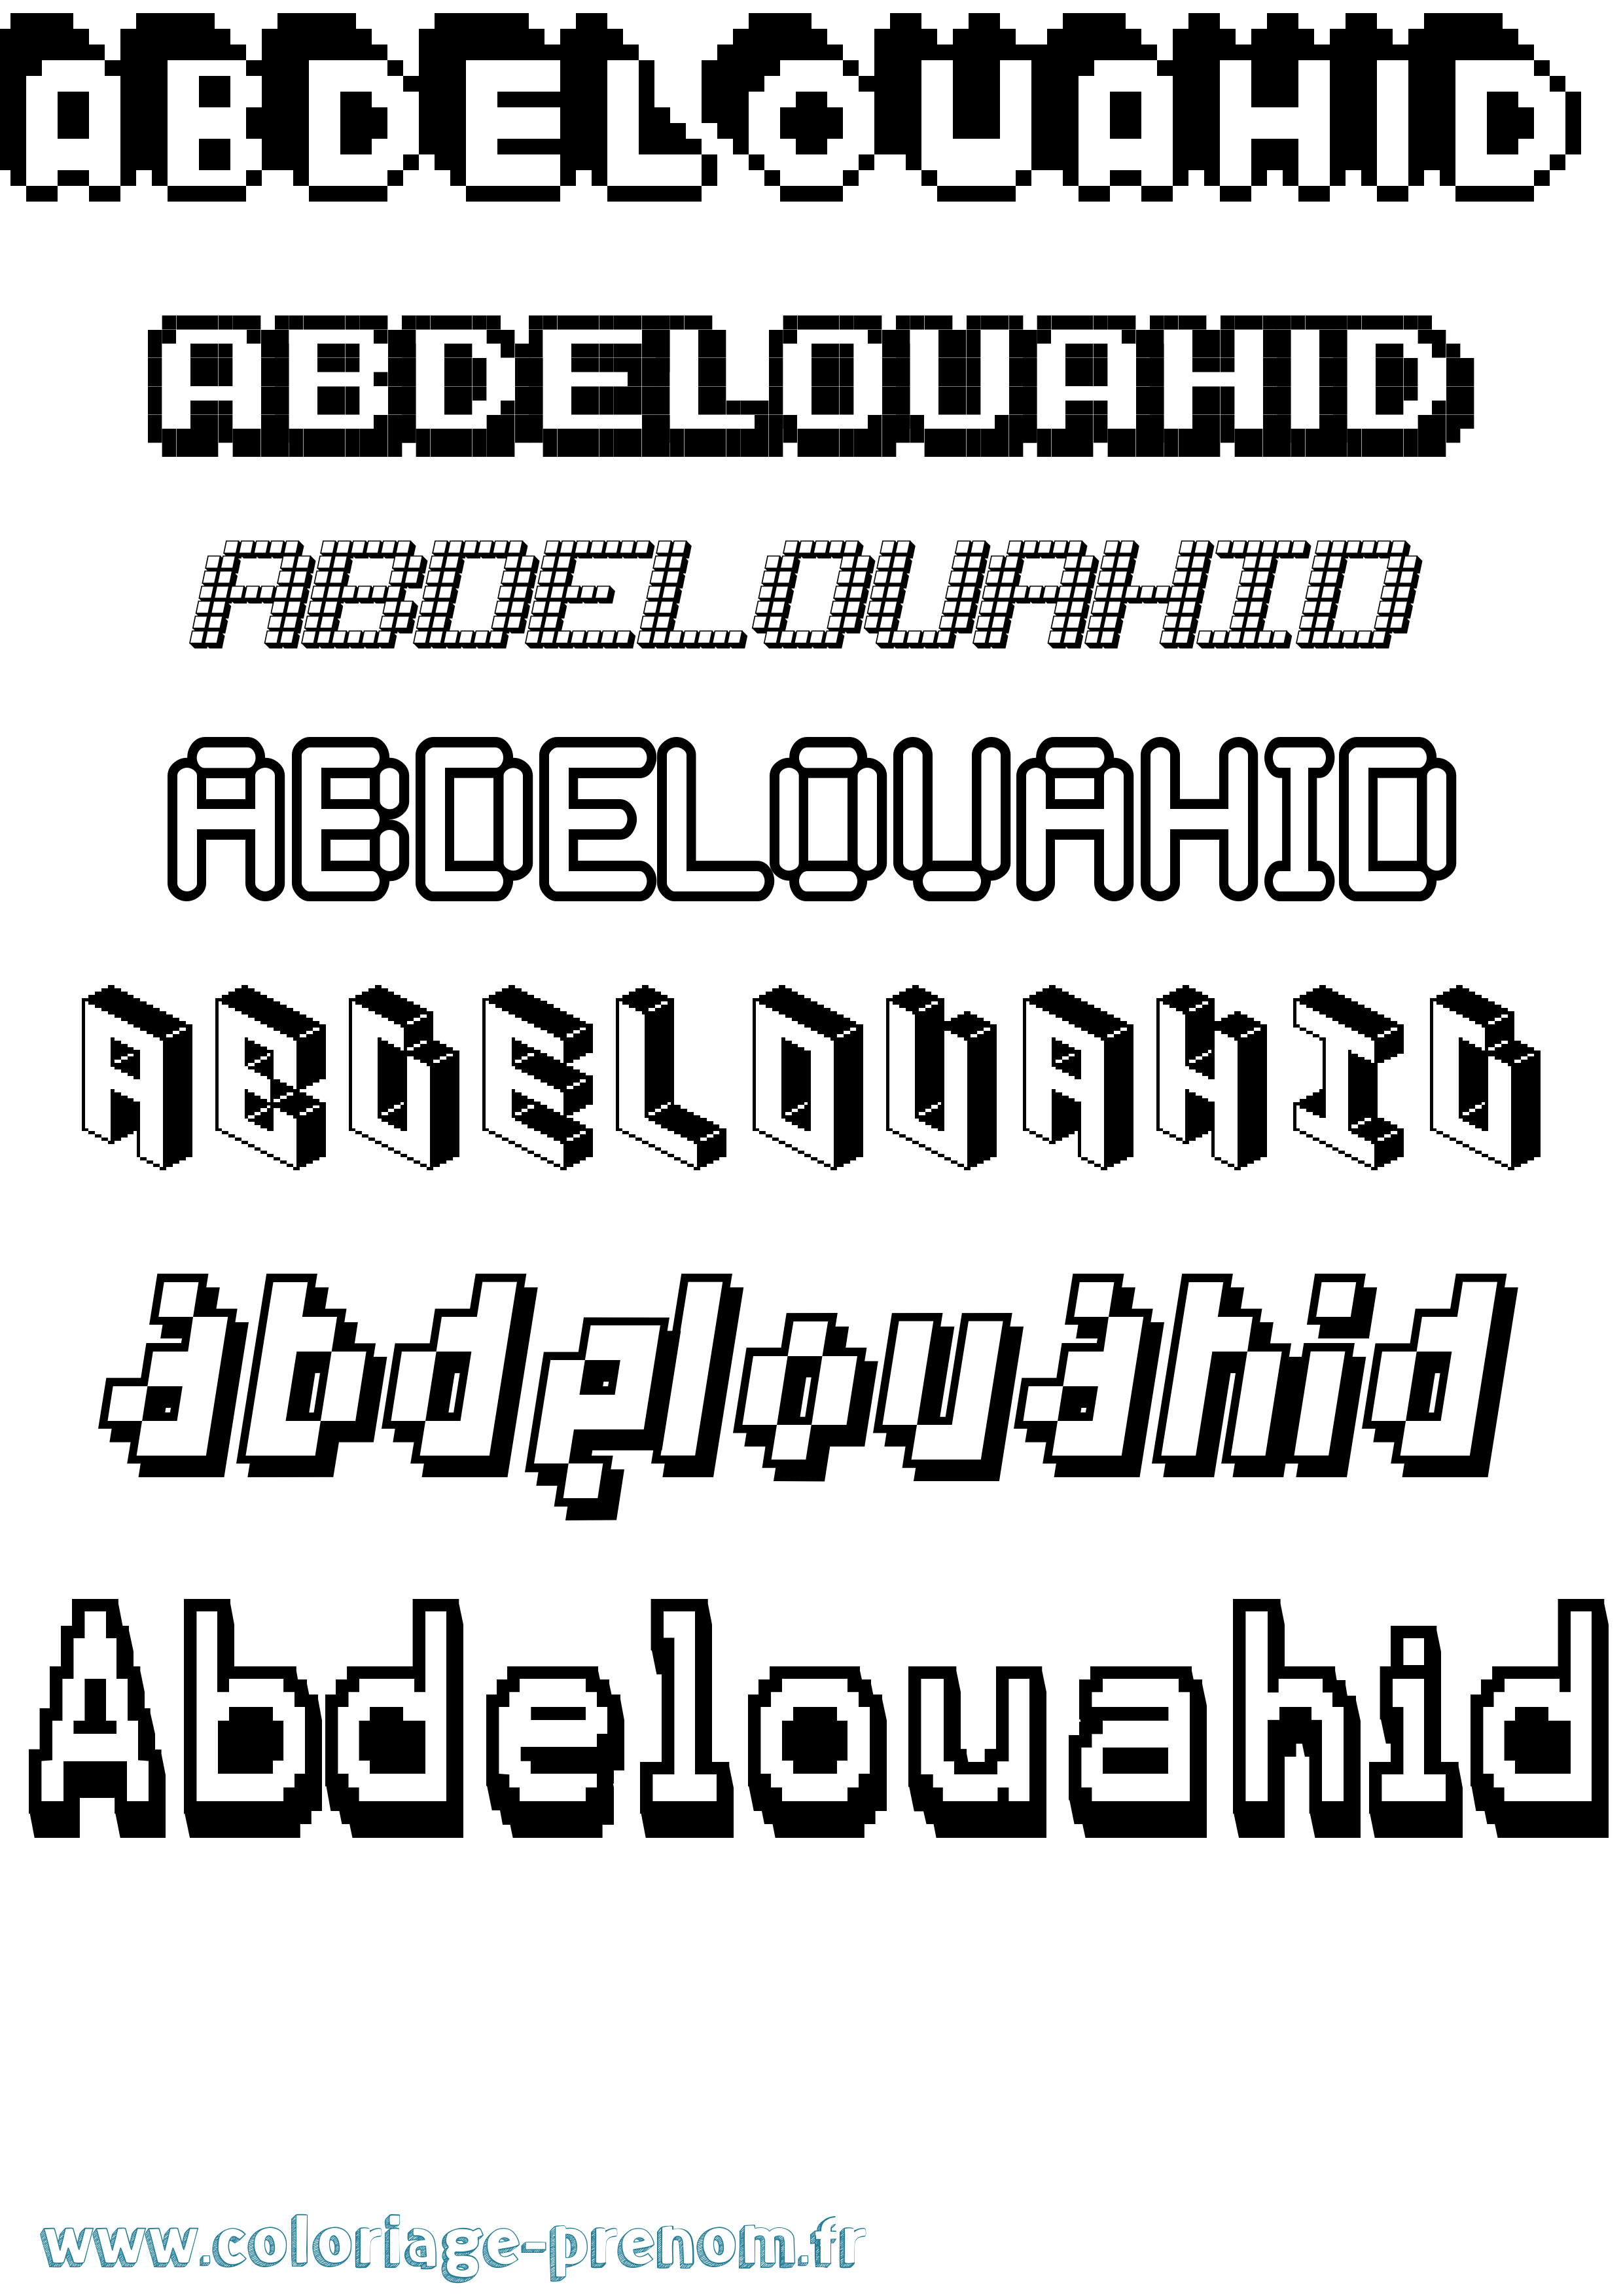 Coloriage prénom Abdelouahid Pixel